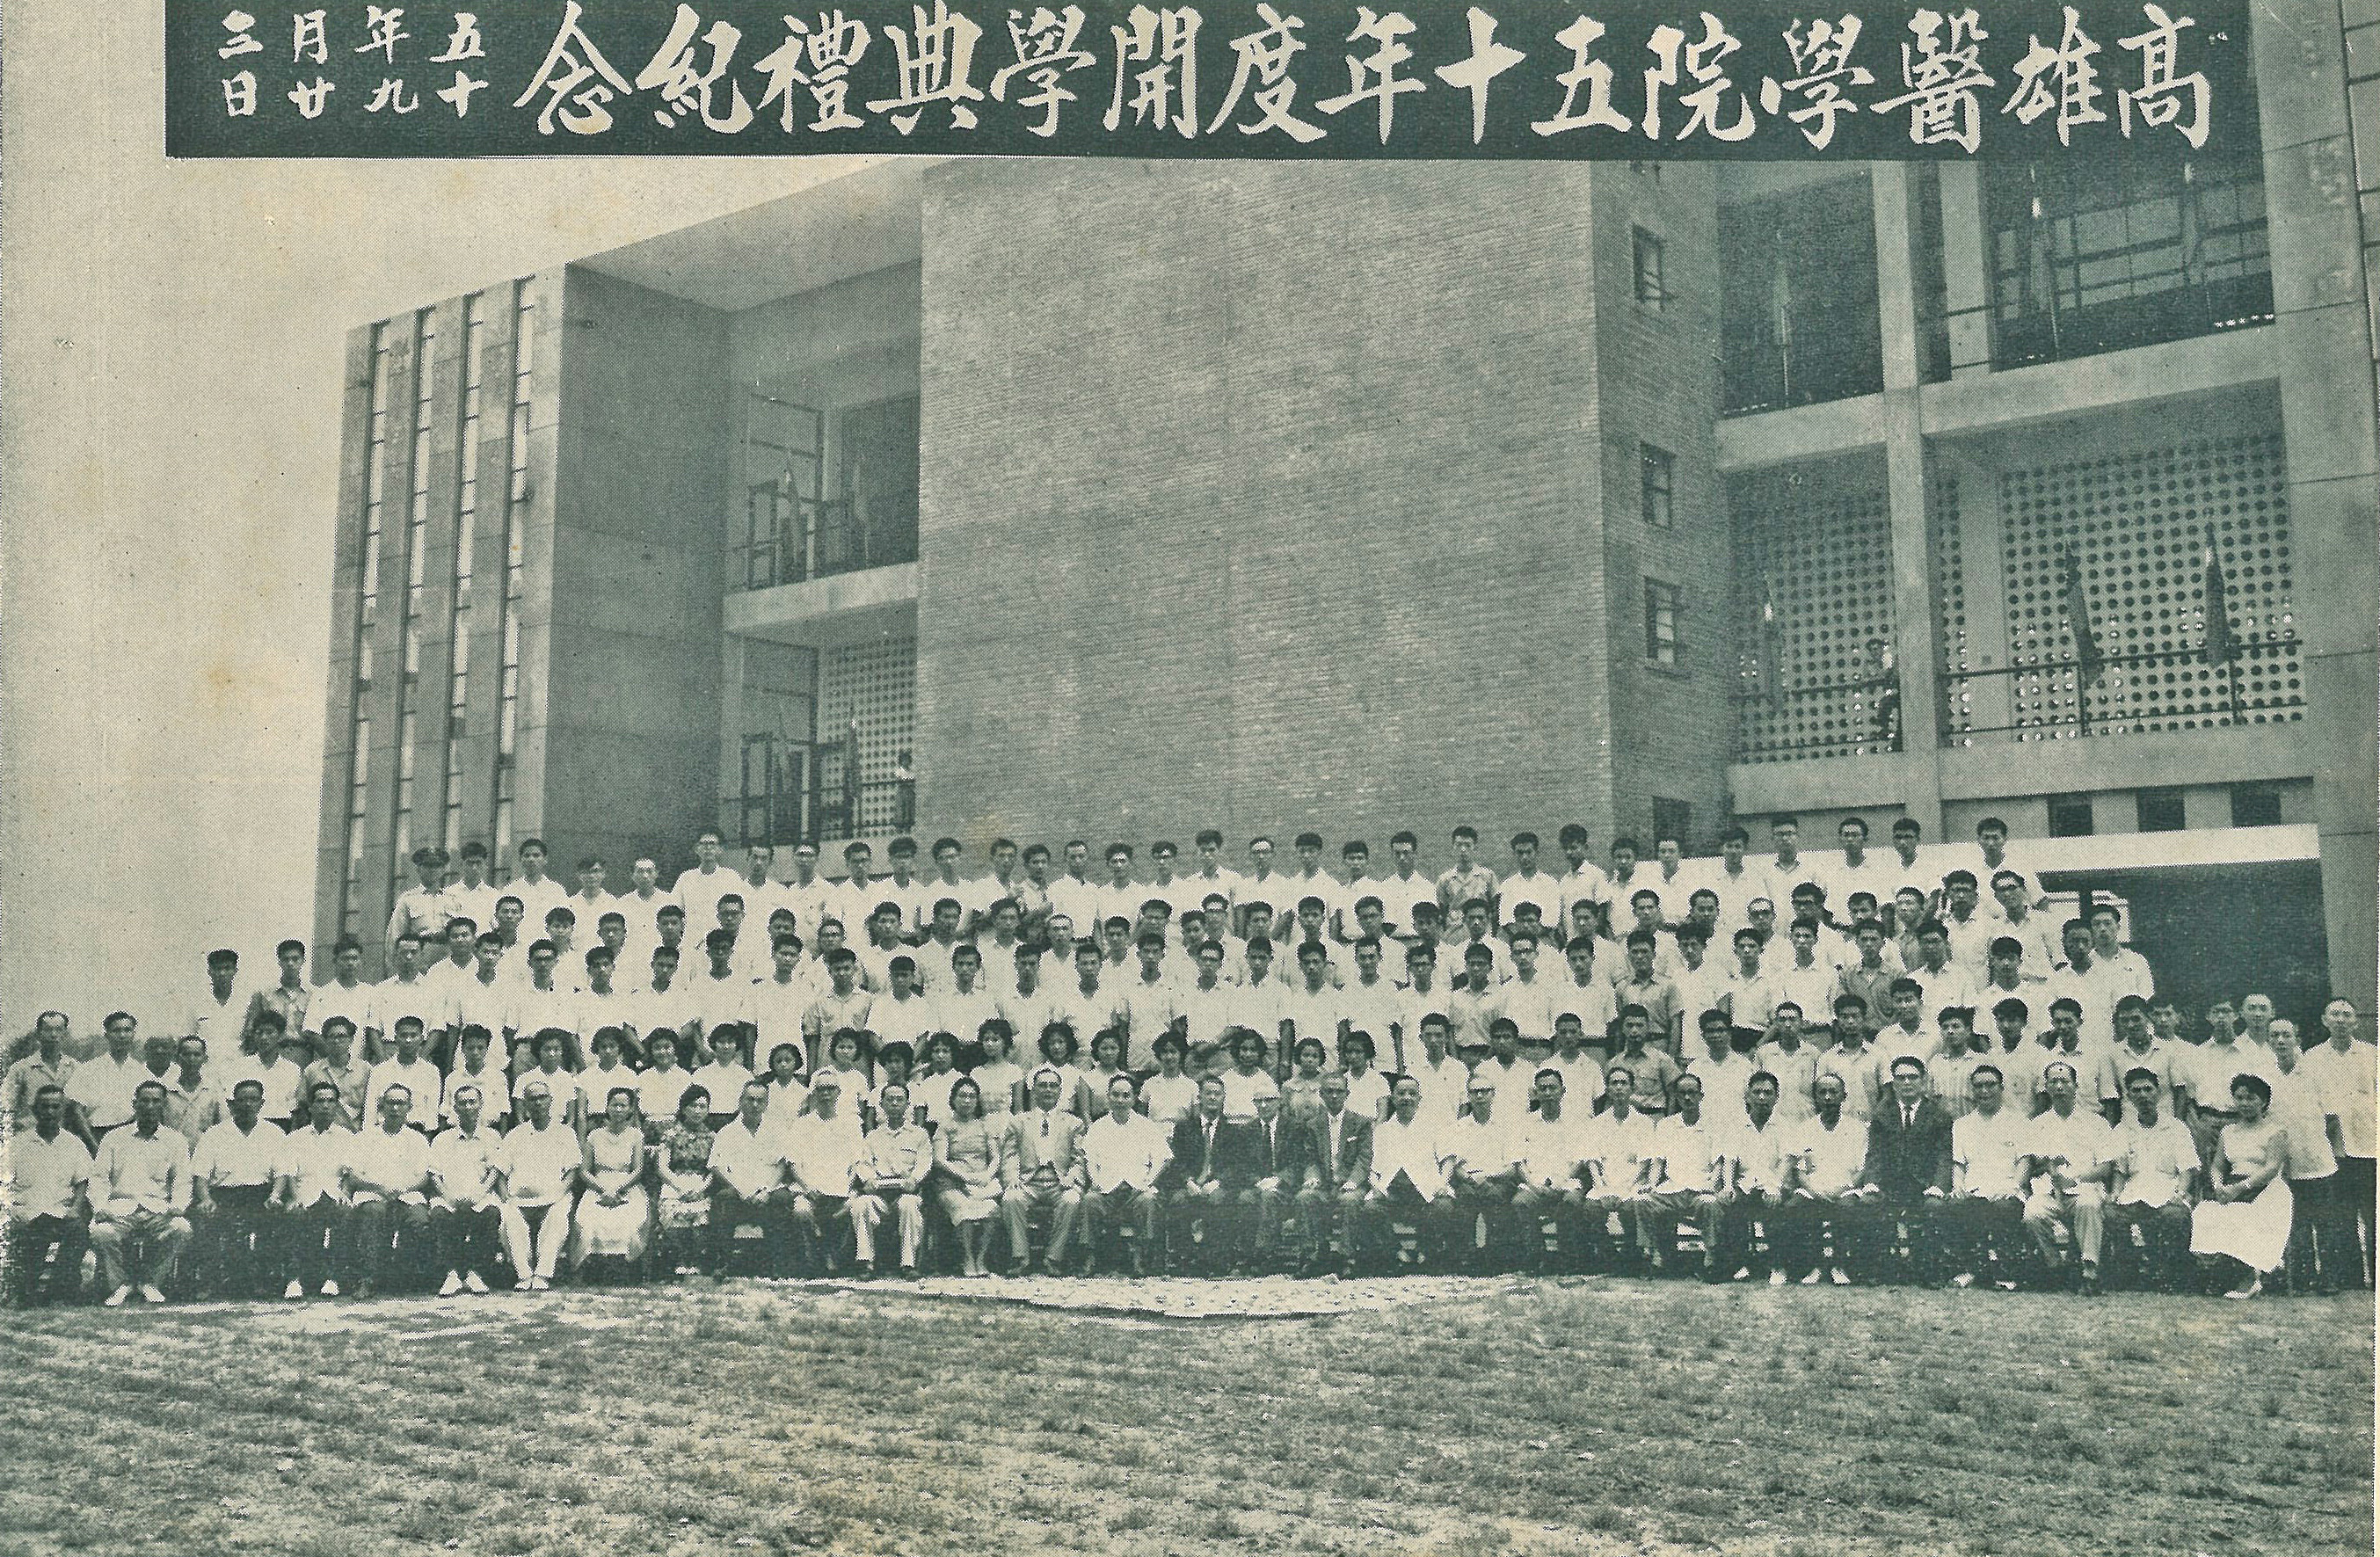 1961年9月23日高雄醫學院50年度開學典禮背景為同年落成啟用的圖書館